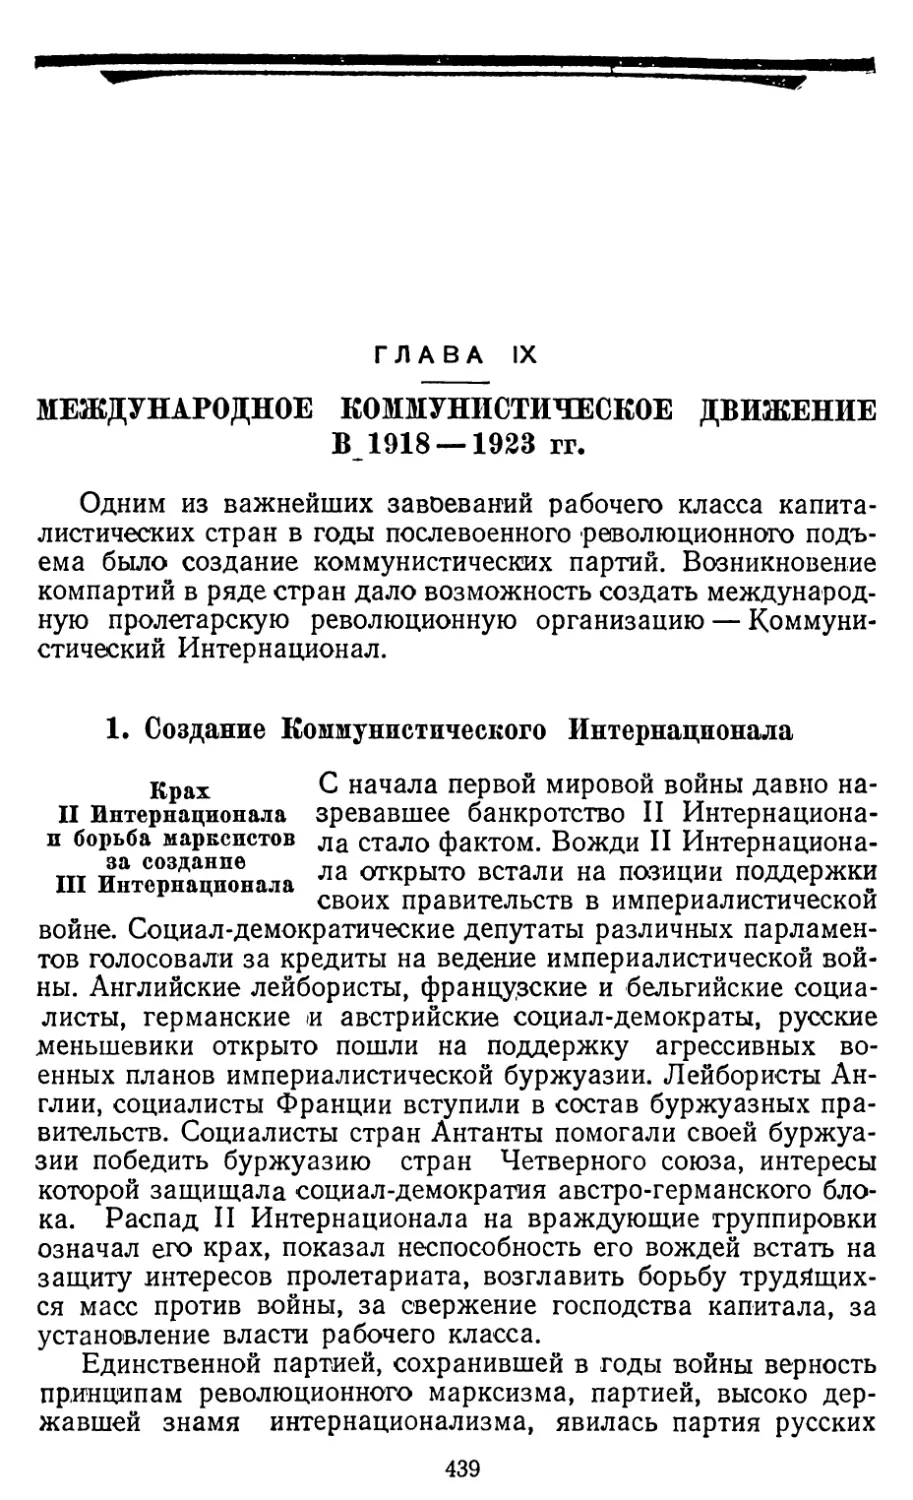 Глава IX. МЕЖДУНАРОДНОЕ КОММУНИСТИЧЕСКОЕ ДВИЖЕНИЕ В 1918—1923 гг